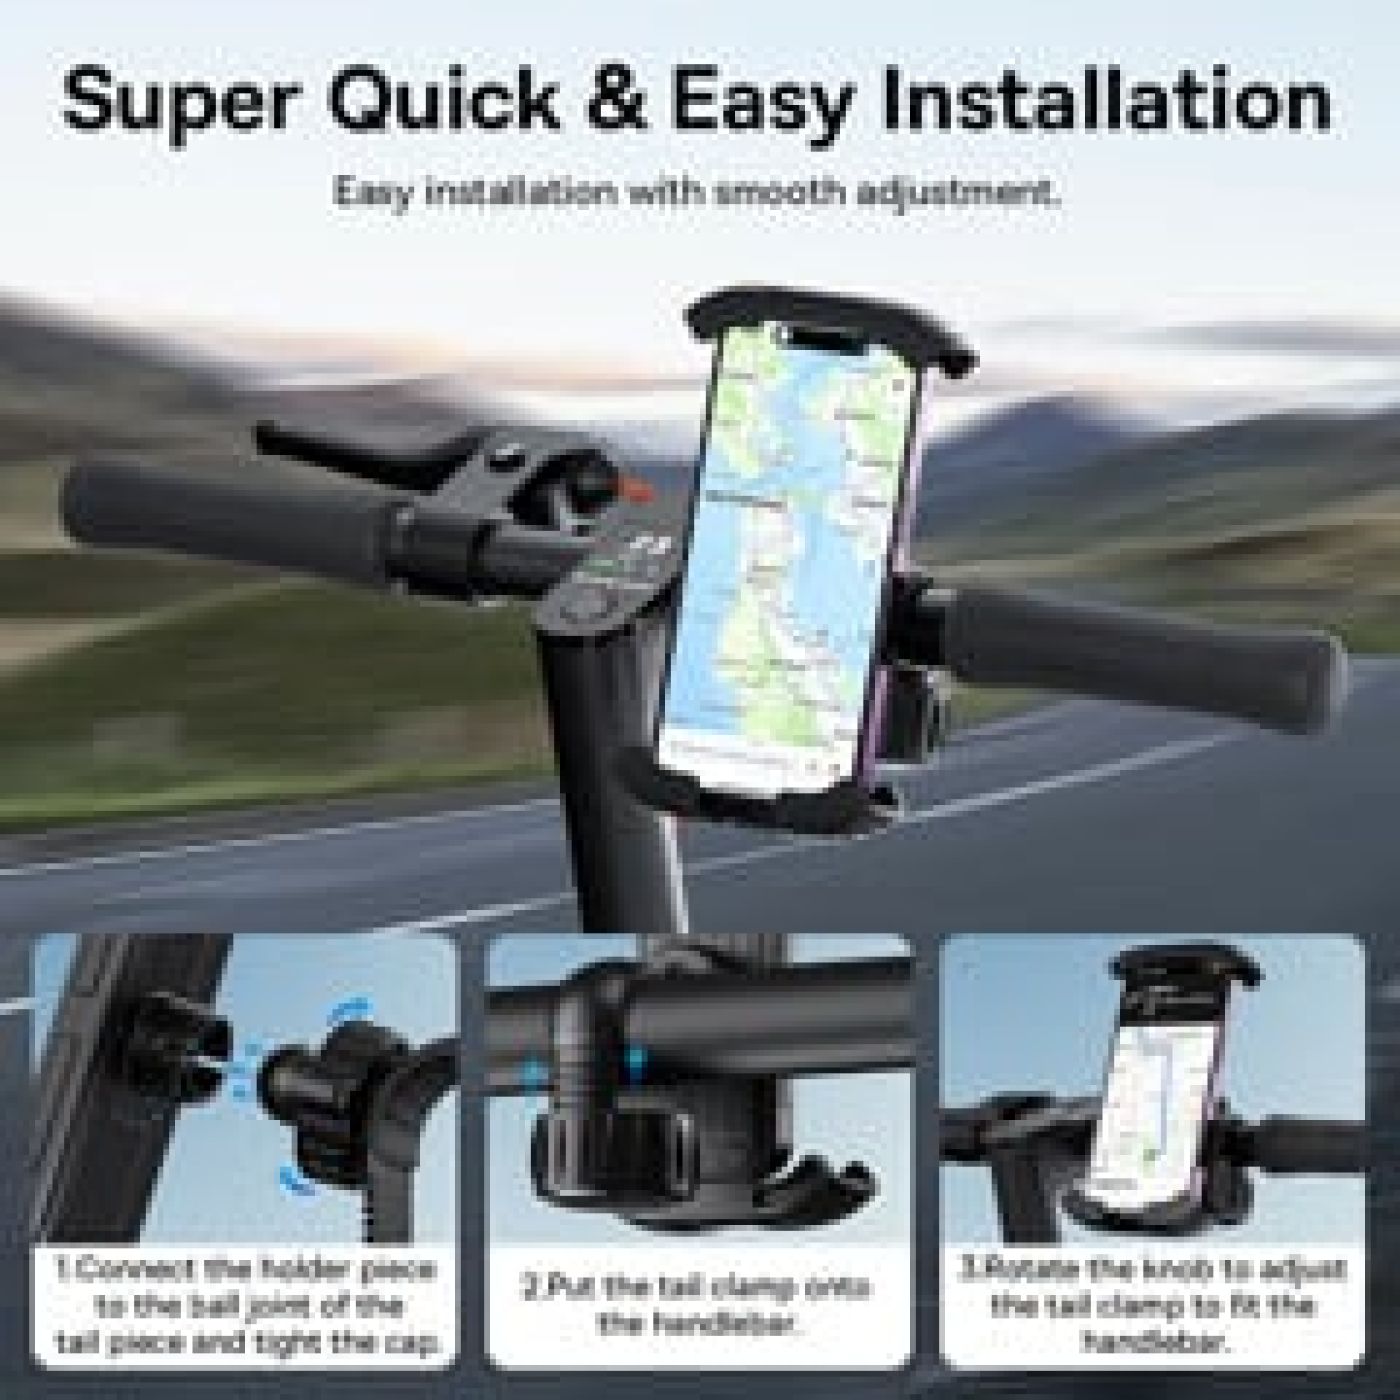 Giá đỡ điện thoại Baseus QuickGo Series Bike Phone